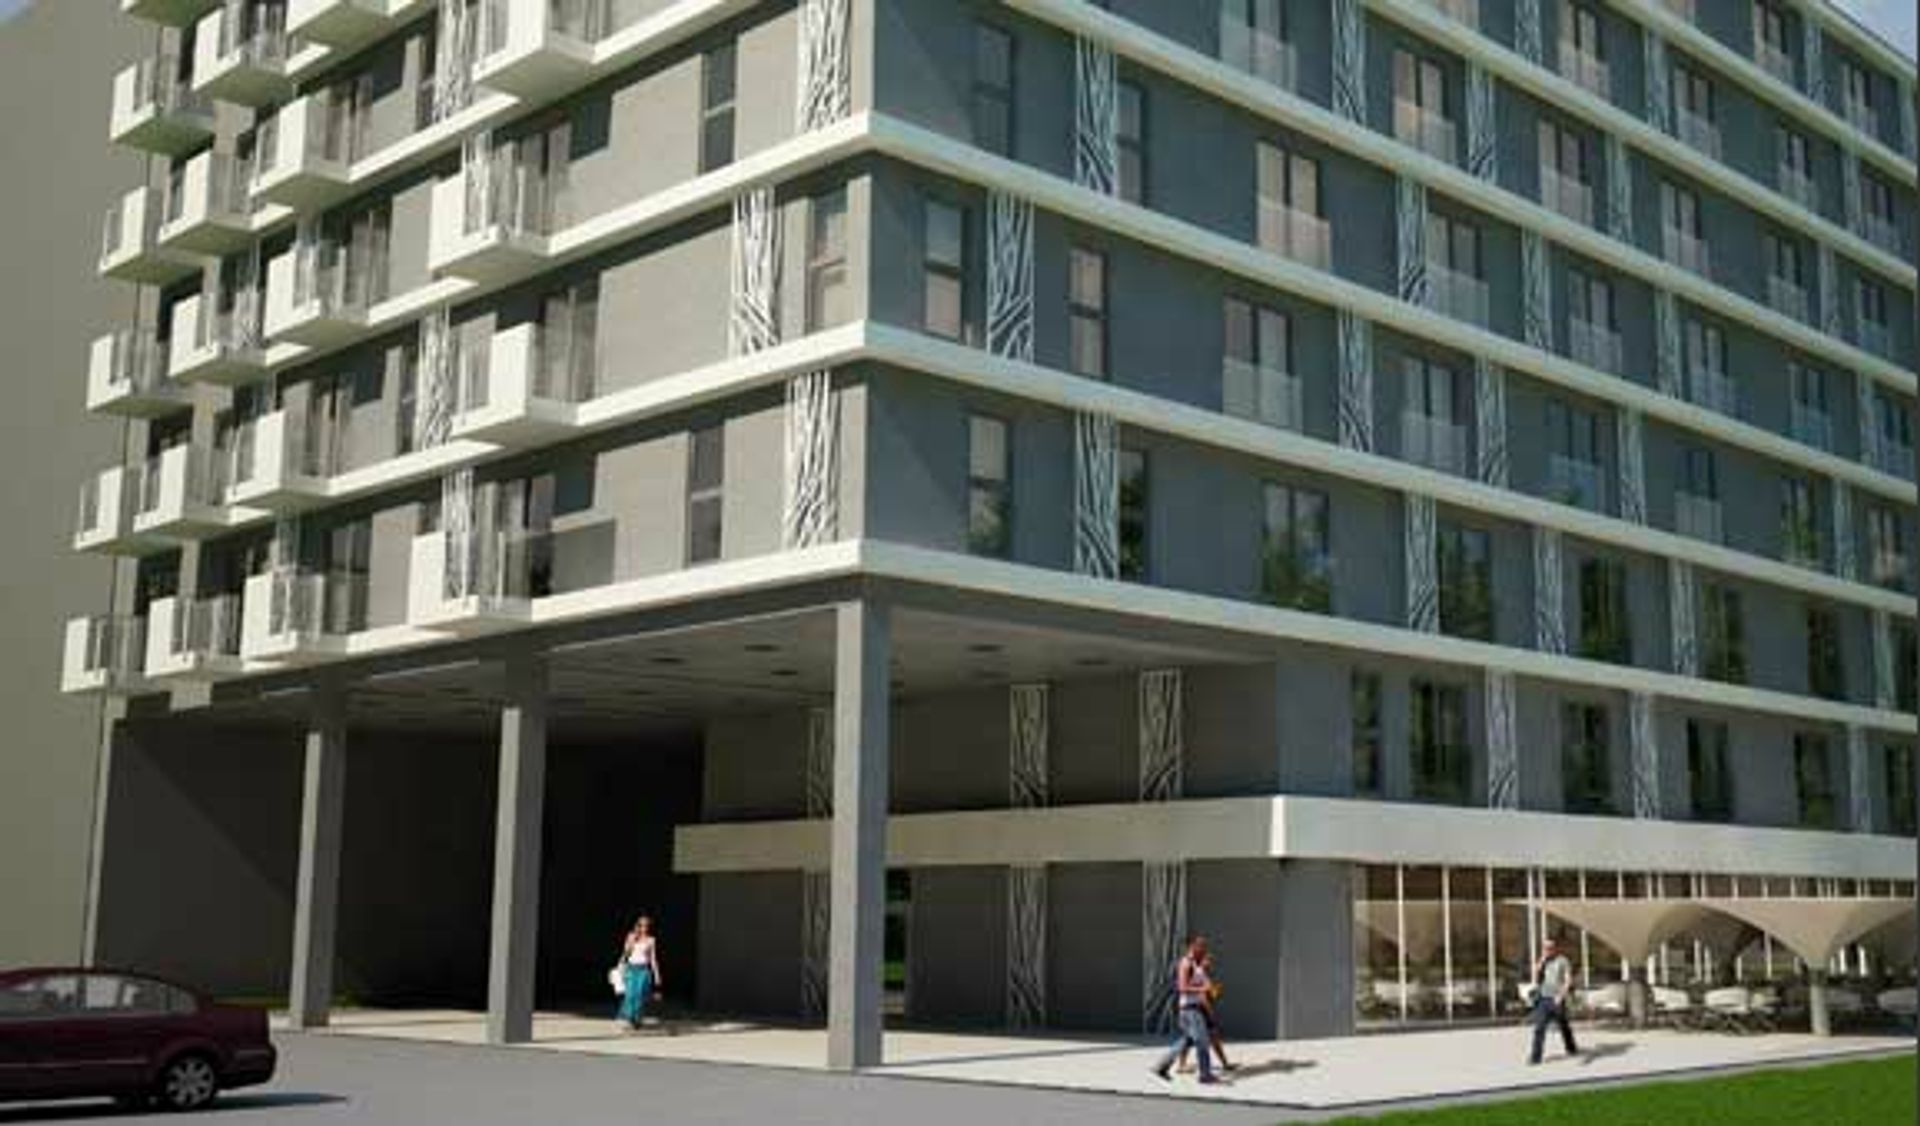  Kup sobie hotelowy apartament - na Hubskiej powstaje aparthotel